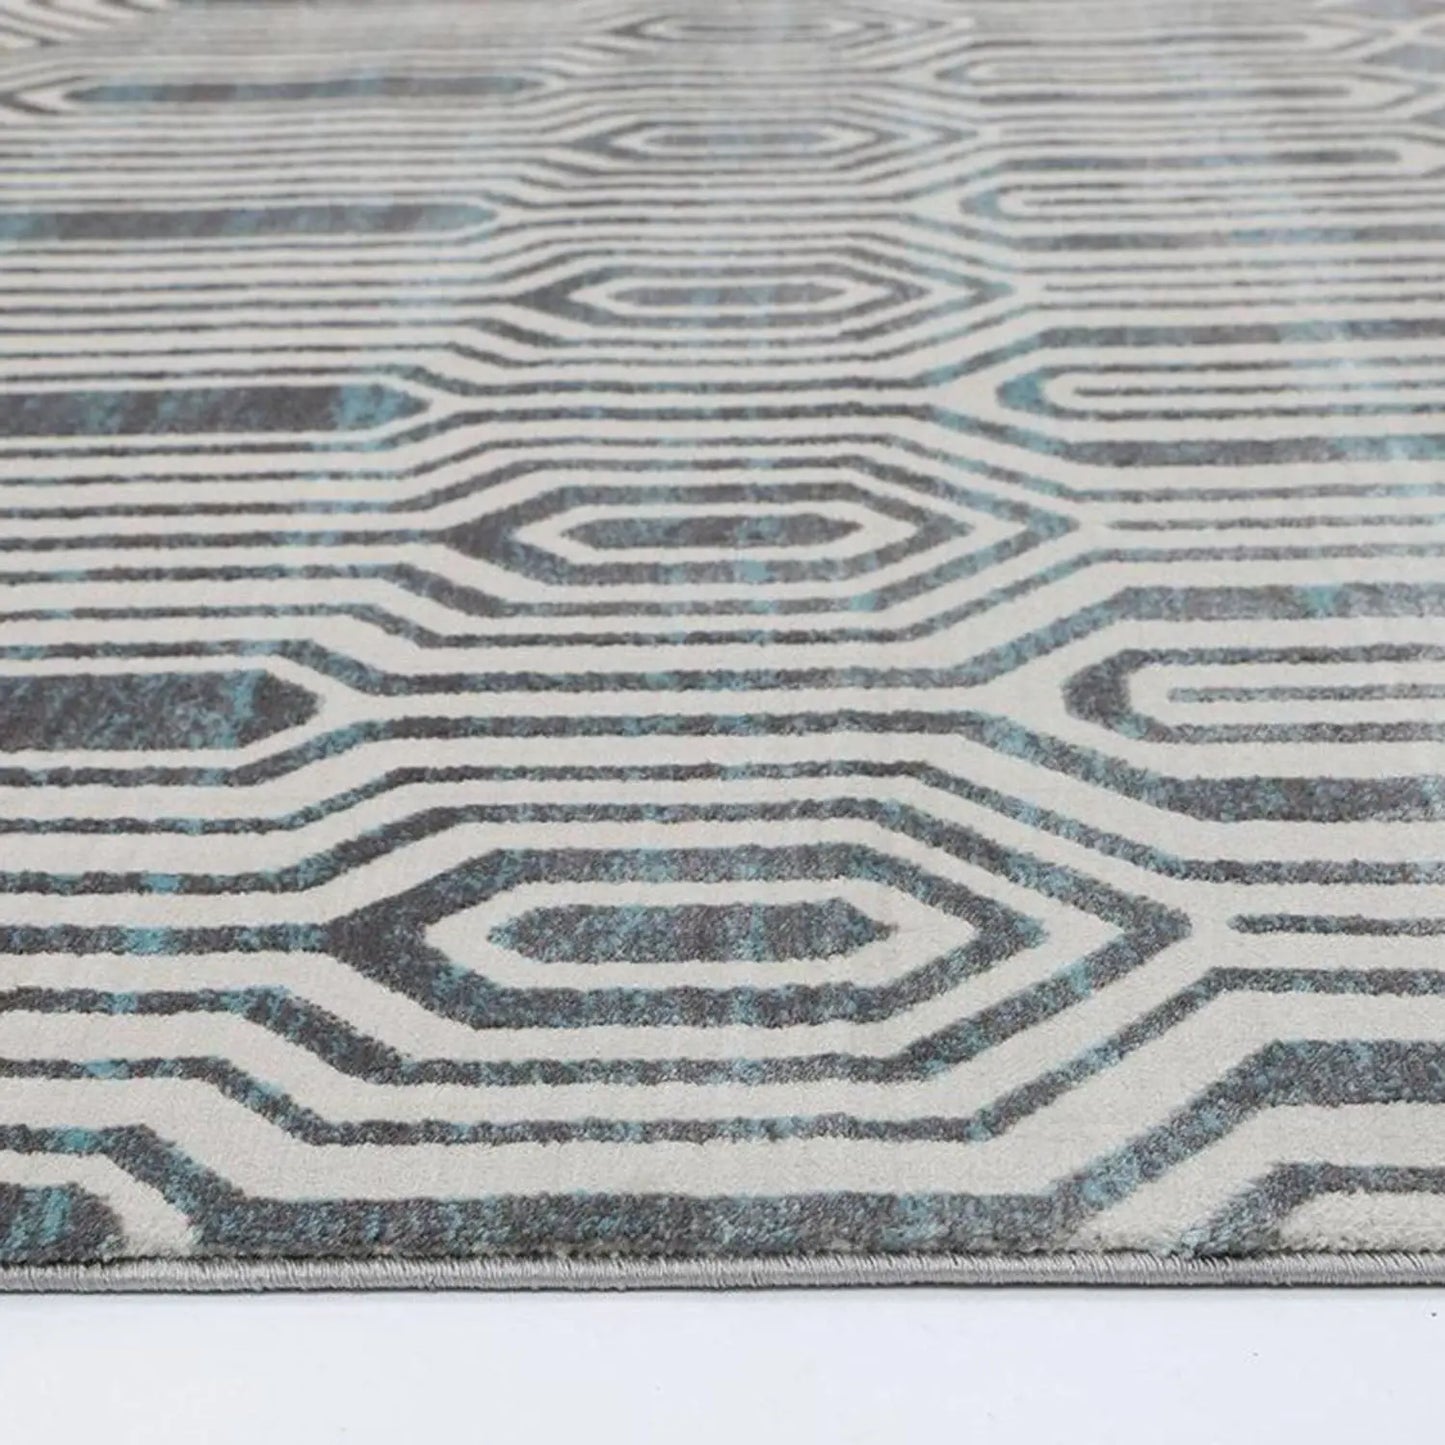 Pierre Cardin Sateen Maze Designer Rug Grey/Blue decorugonline